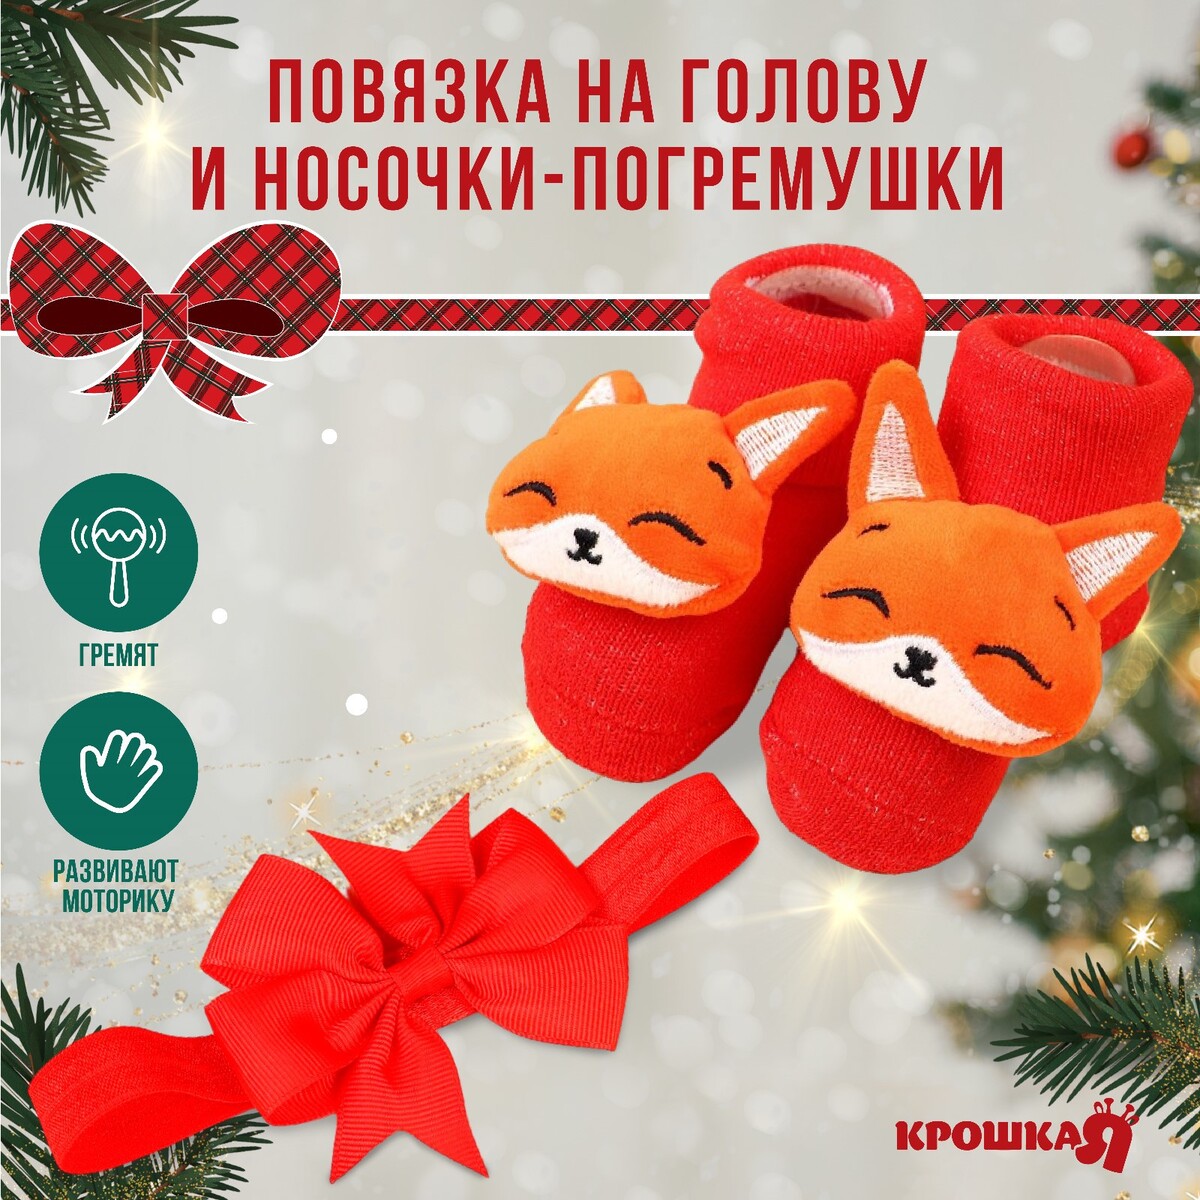 Подарочный набор: повязка на голову и носочки - погремушки на ножки повязка на голову onlytop оранжевый